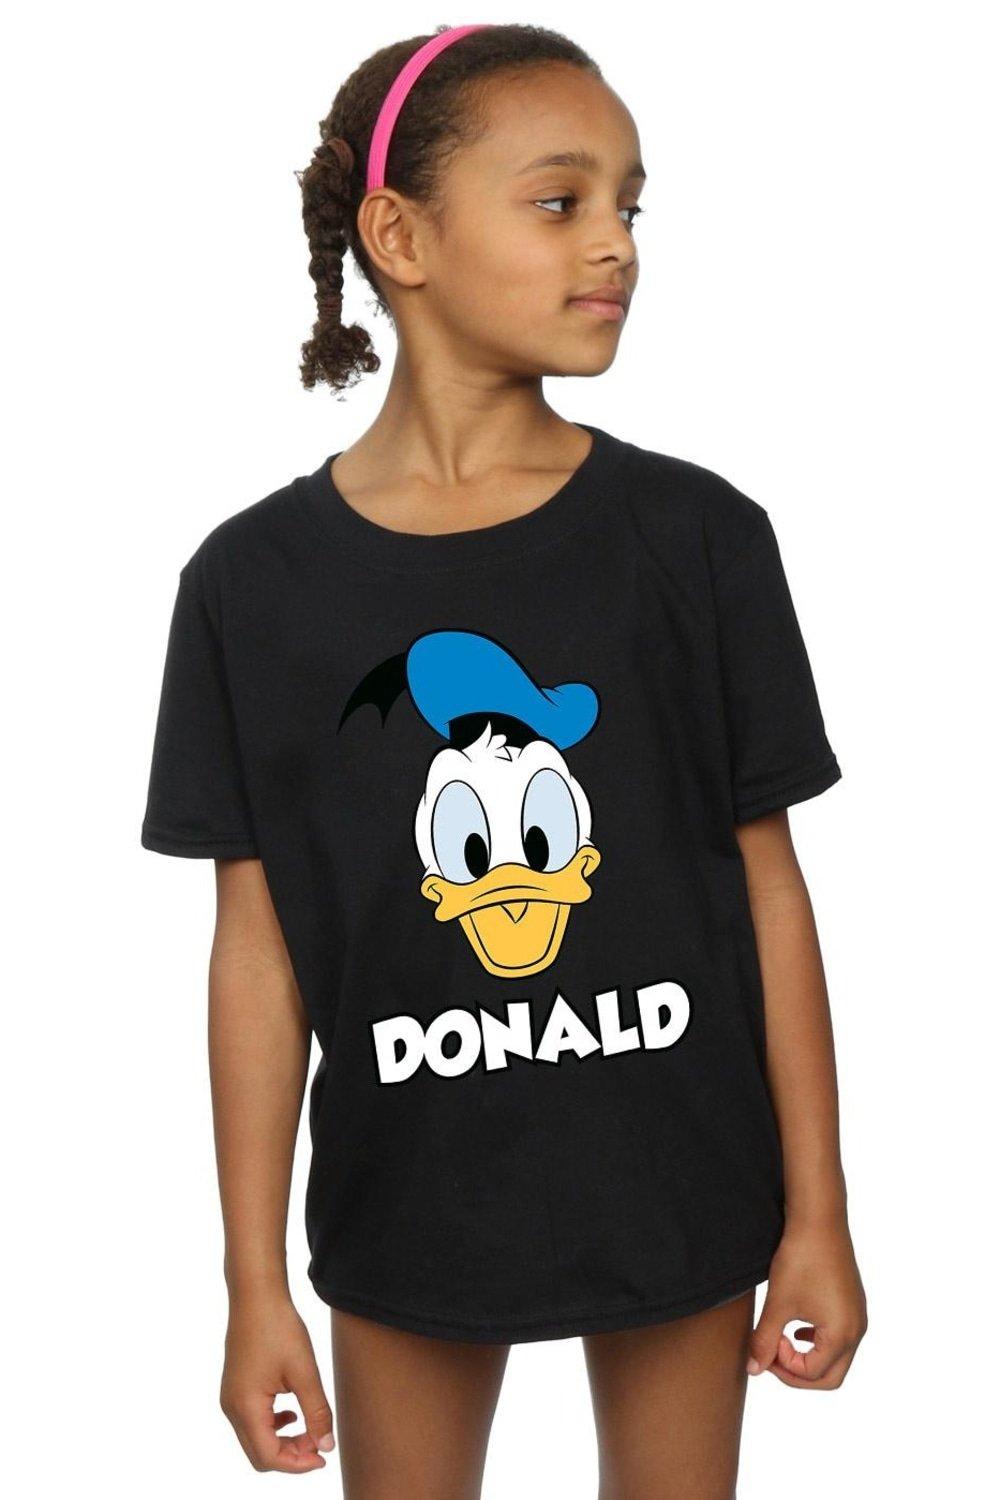 Хлопковая футболка с изображением Дональда Дака Disney, черный картина из страз с изображением дональда дака диснея вышивка картина с животными украшение для дома рождественские подарки для детей